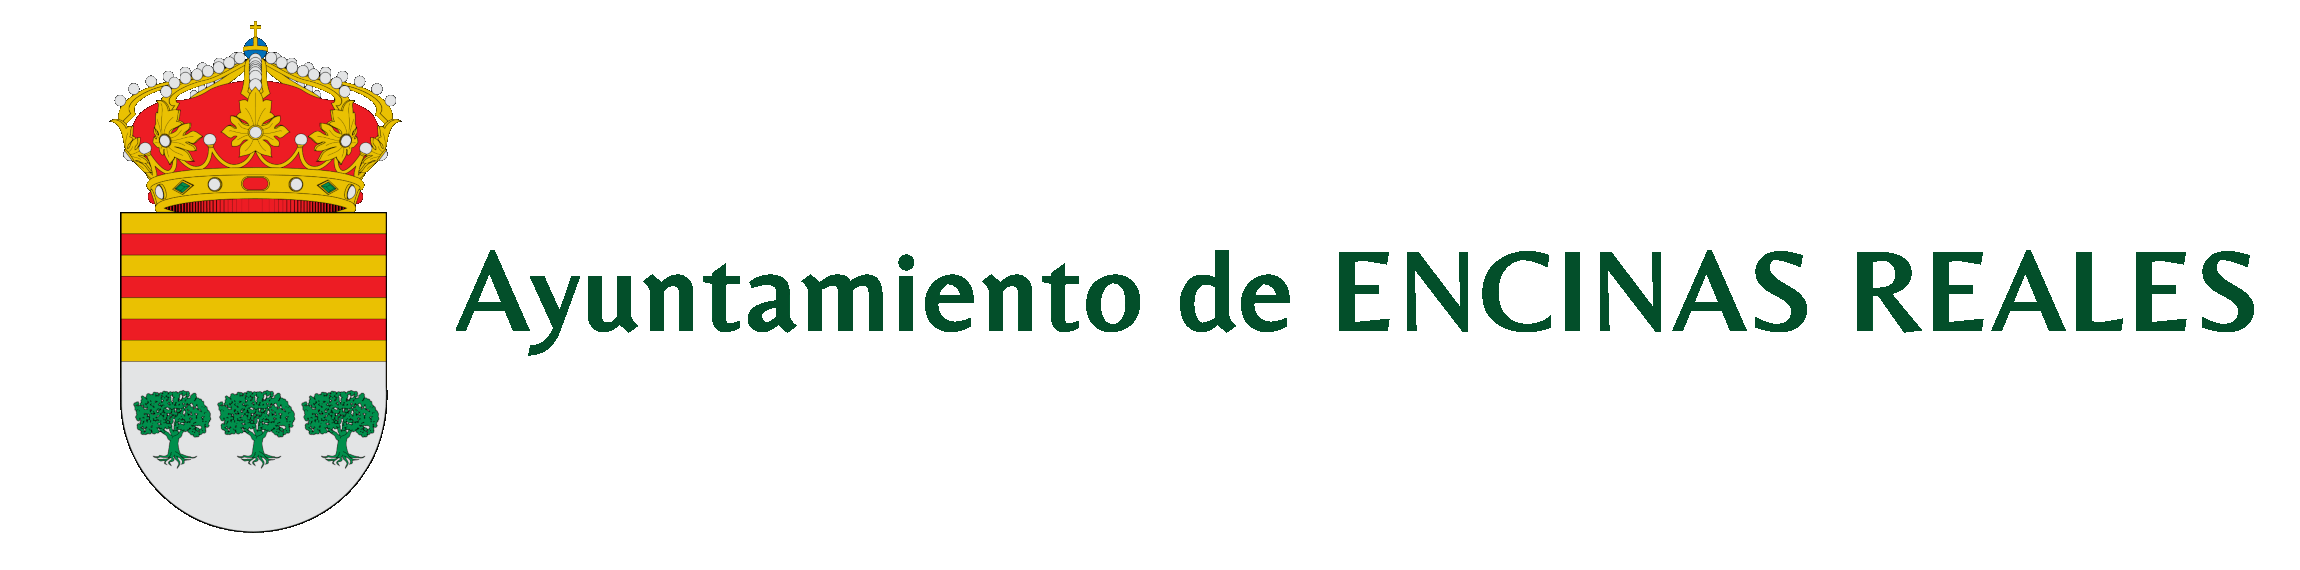 logo_ayto_encinas_reales